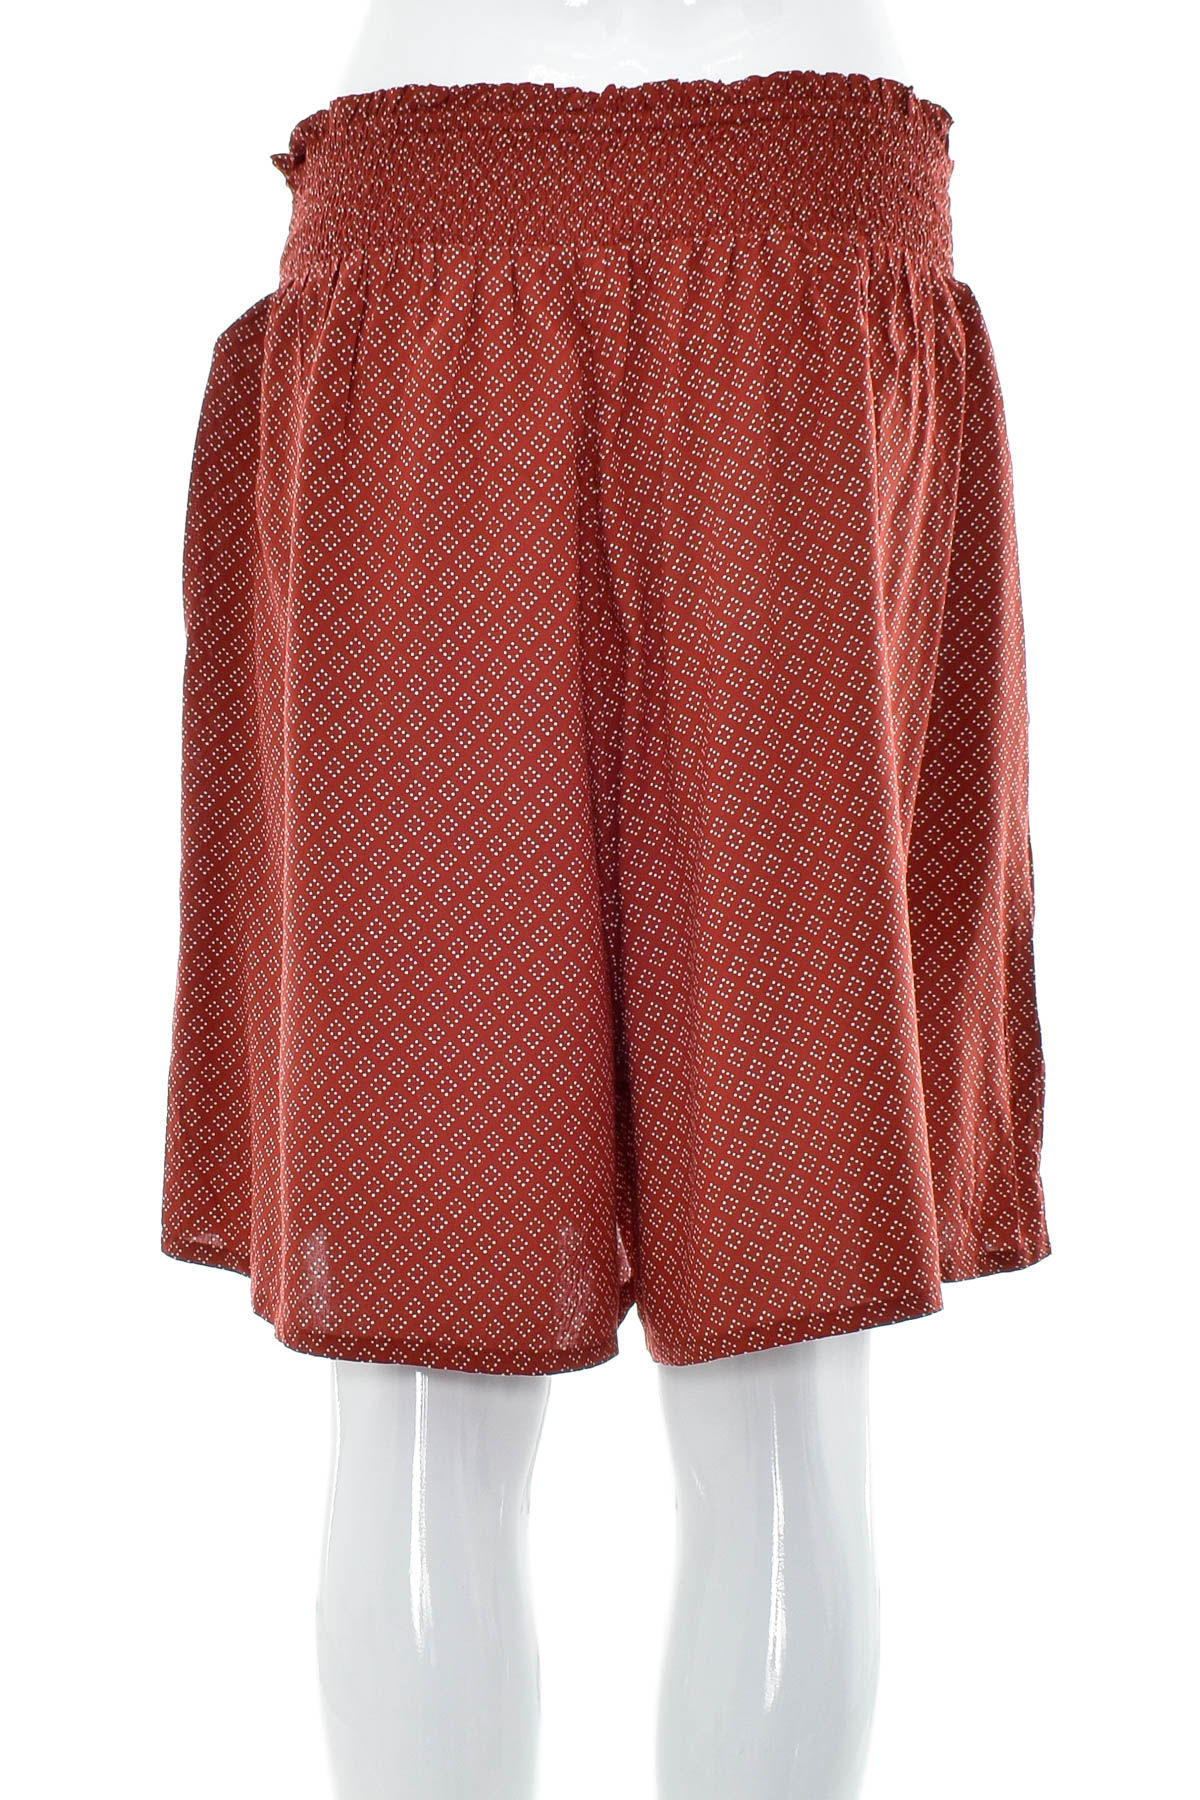 Female shorts - Edc - 1